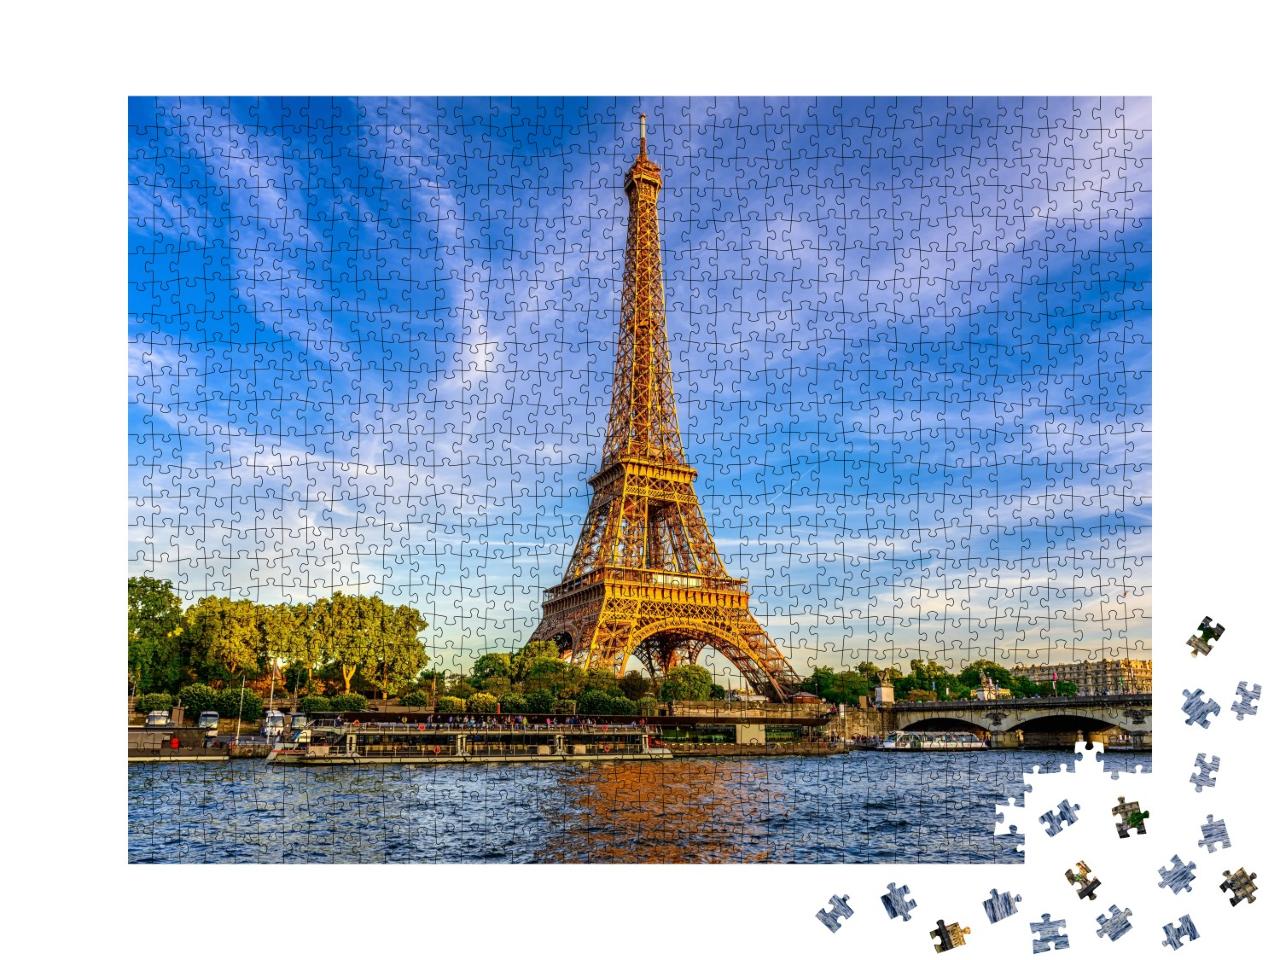 Puzzle de 1000 pièces « La Tour Eiffel et la Seine au coucher du soleil à Paris, France »